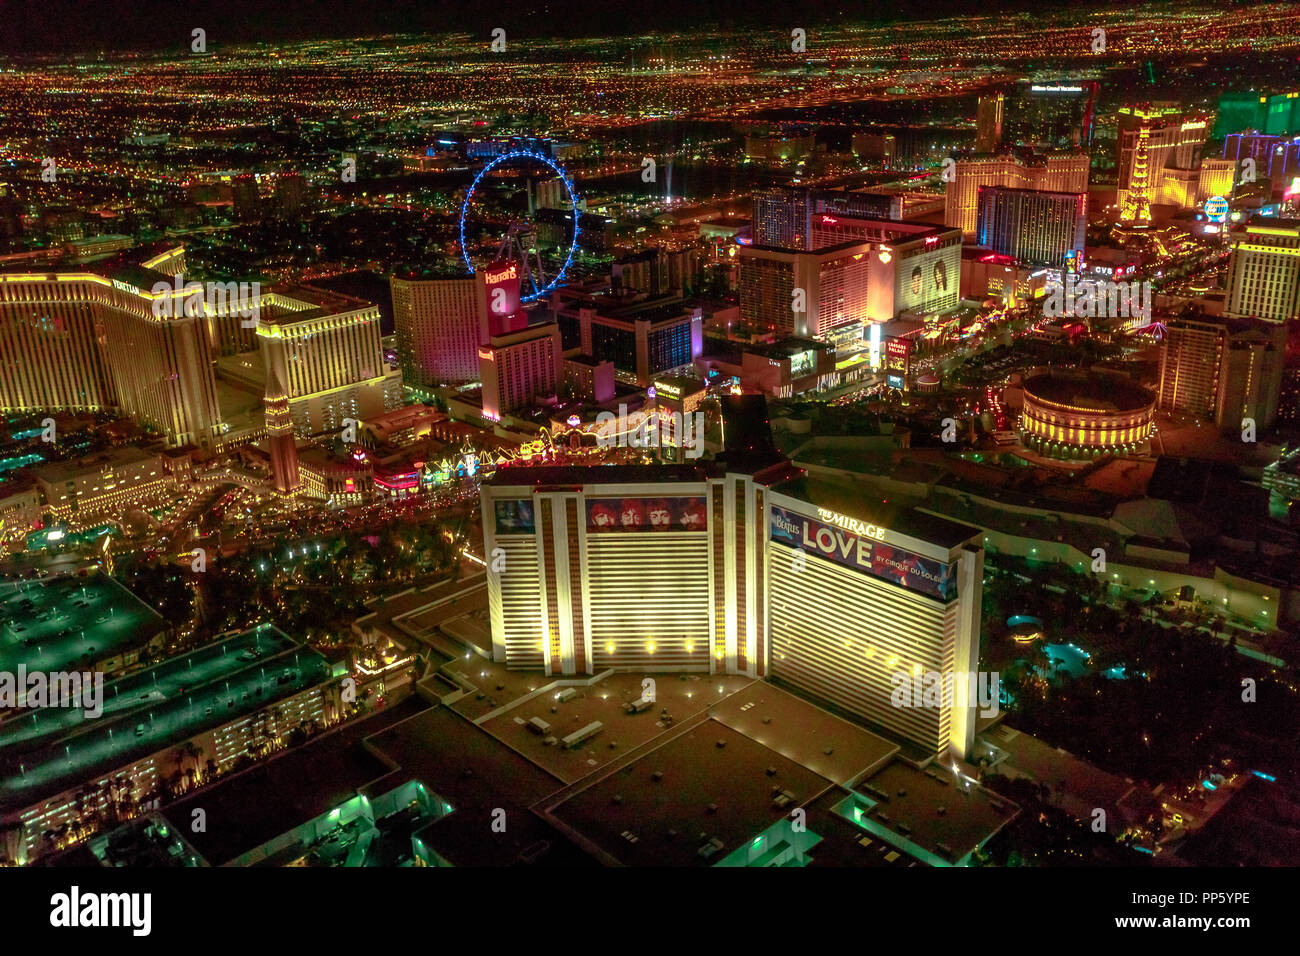 Las Vegas, Nevada, USA - 18. August 2018: Luftaufnahme von Las Vegas Strip  bei Nacht. Rundflug: High Roller Ferris Gemütlischen, das Mirage, Flamingo,  Caesars Palace, Paris, Kasino Bellagio Stockfotografie - Alamy